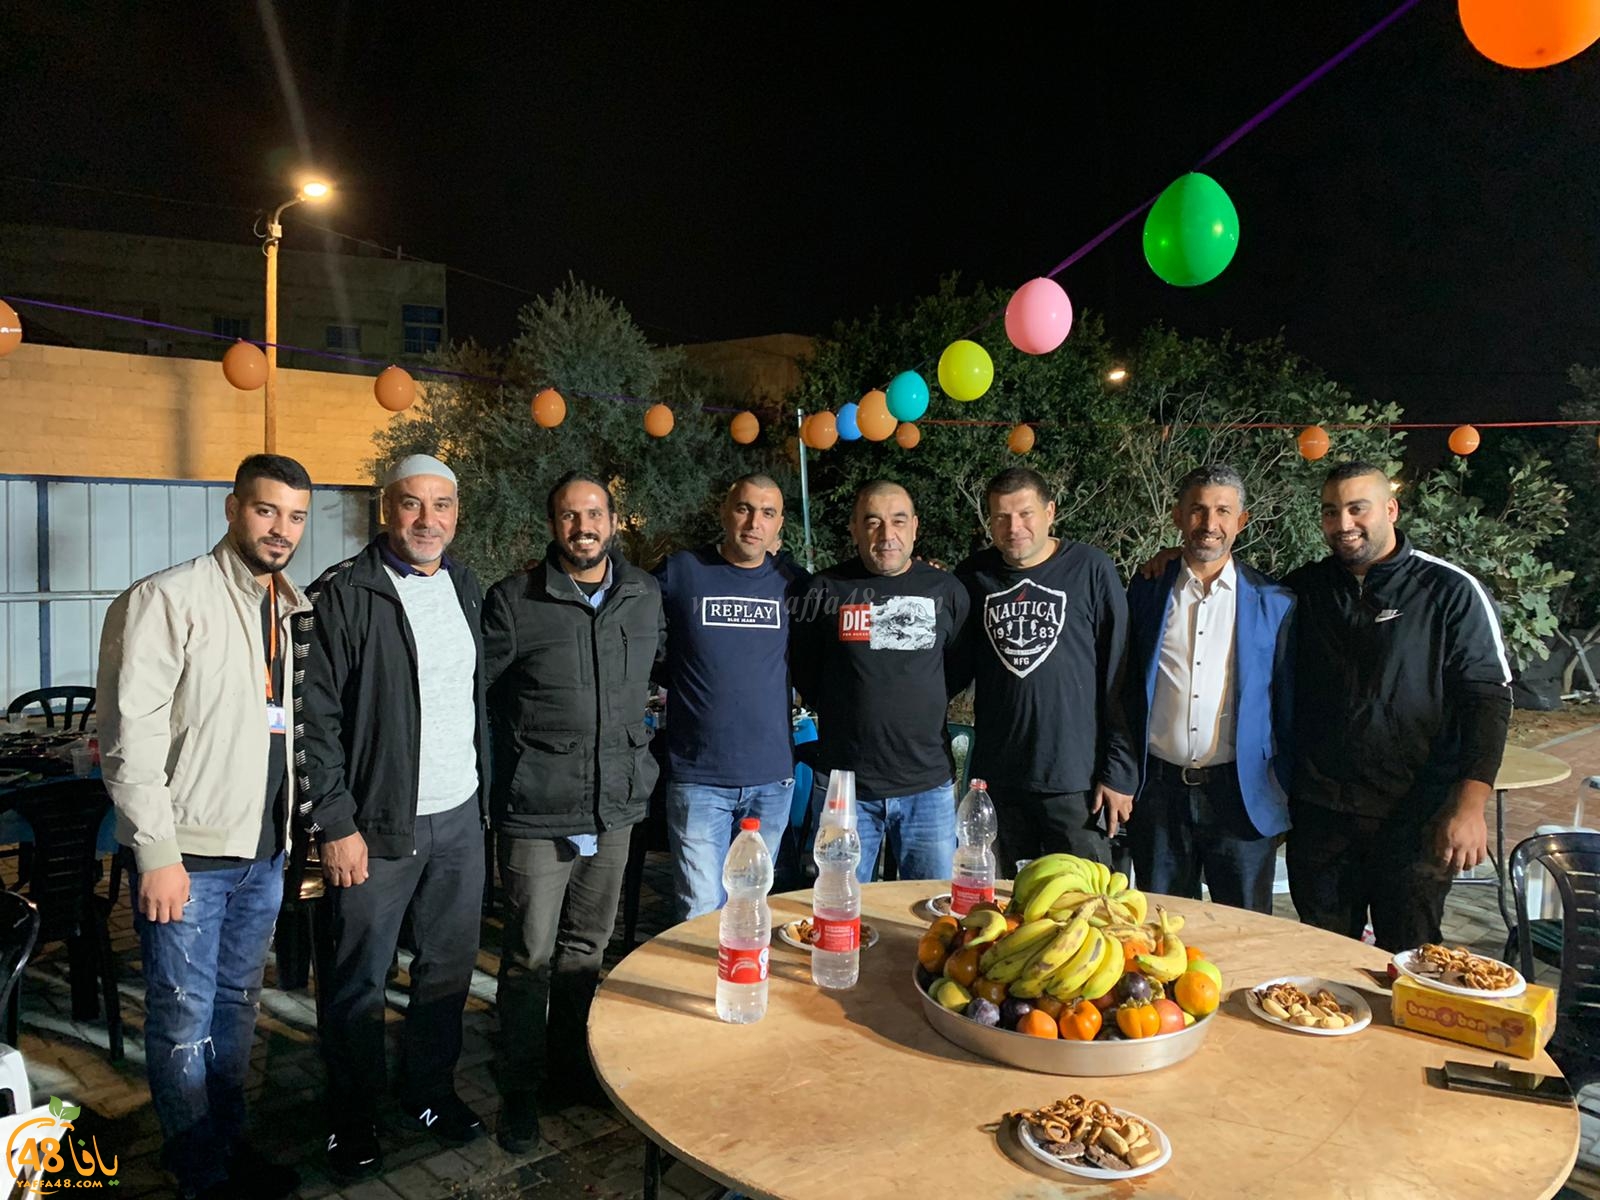  فيديو: افتتاح عيادة مئوحيدت في حي شنير باللد بإدارة الدكتور علي ابو معمر 